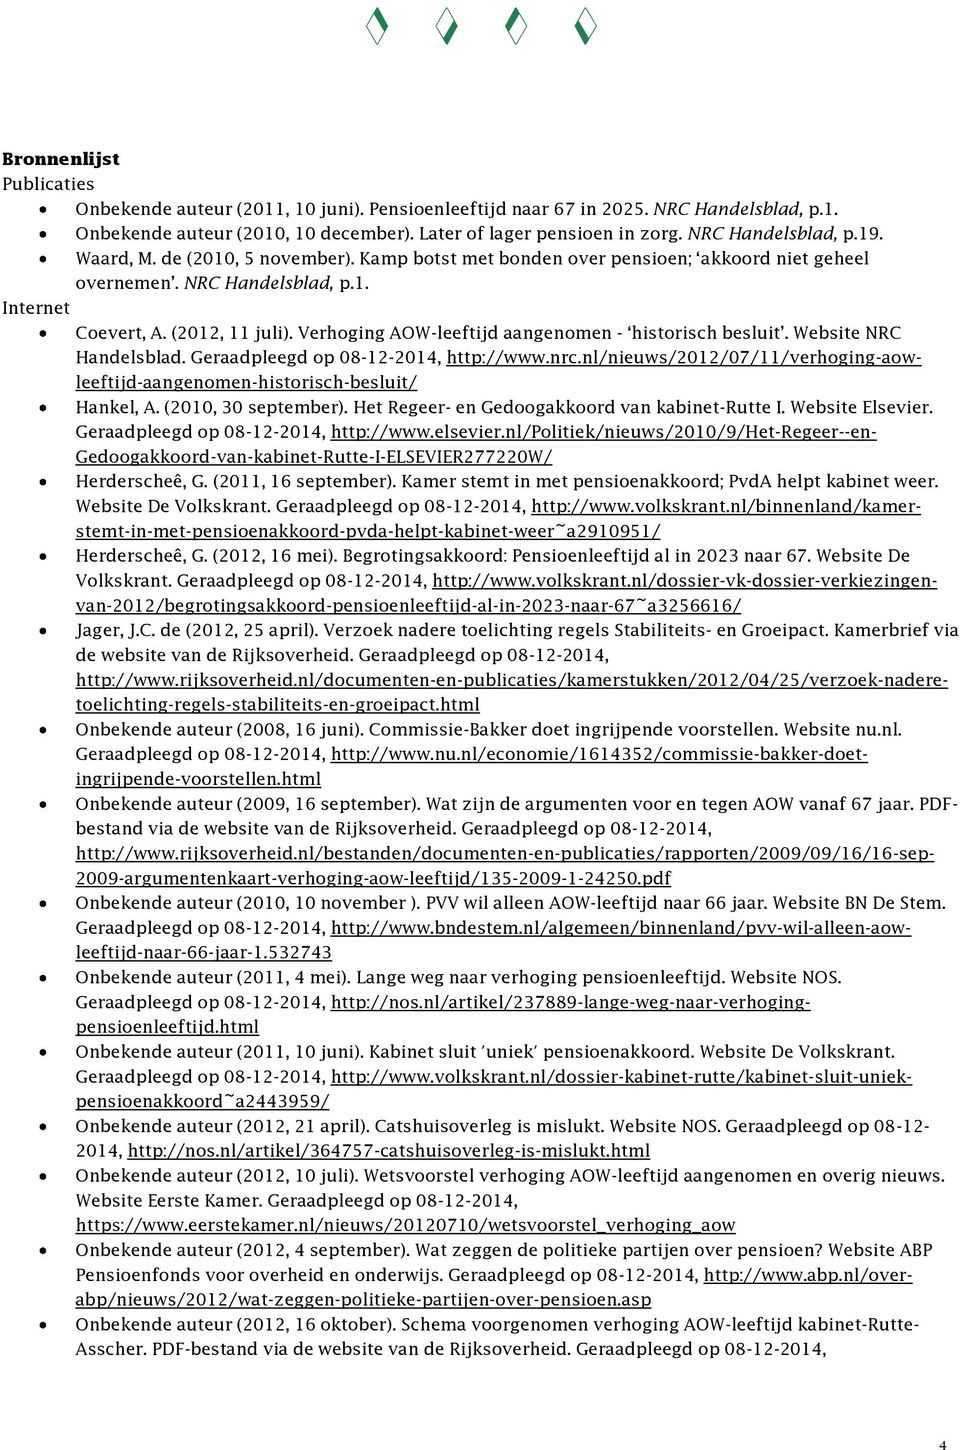 Verhoging AOW-leeftijd aangenomen - historisch besluit. Website NRC Handelsblad. Geraadpleegd op 08-12-2014, http://www.nrc.